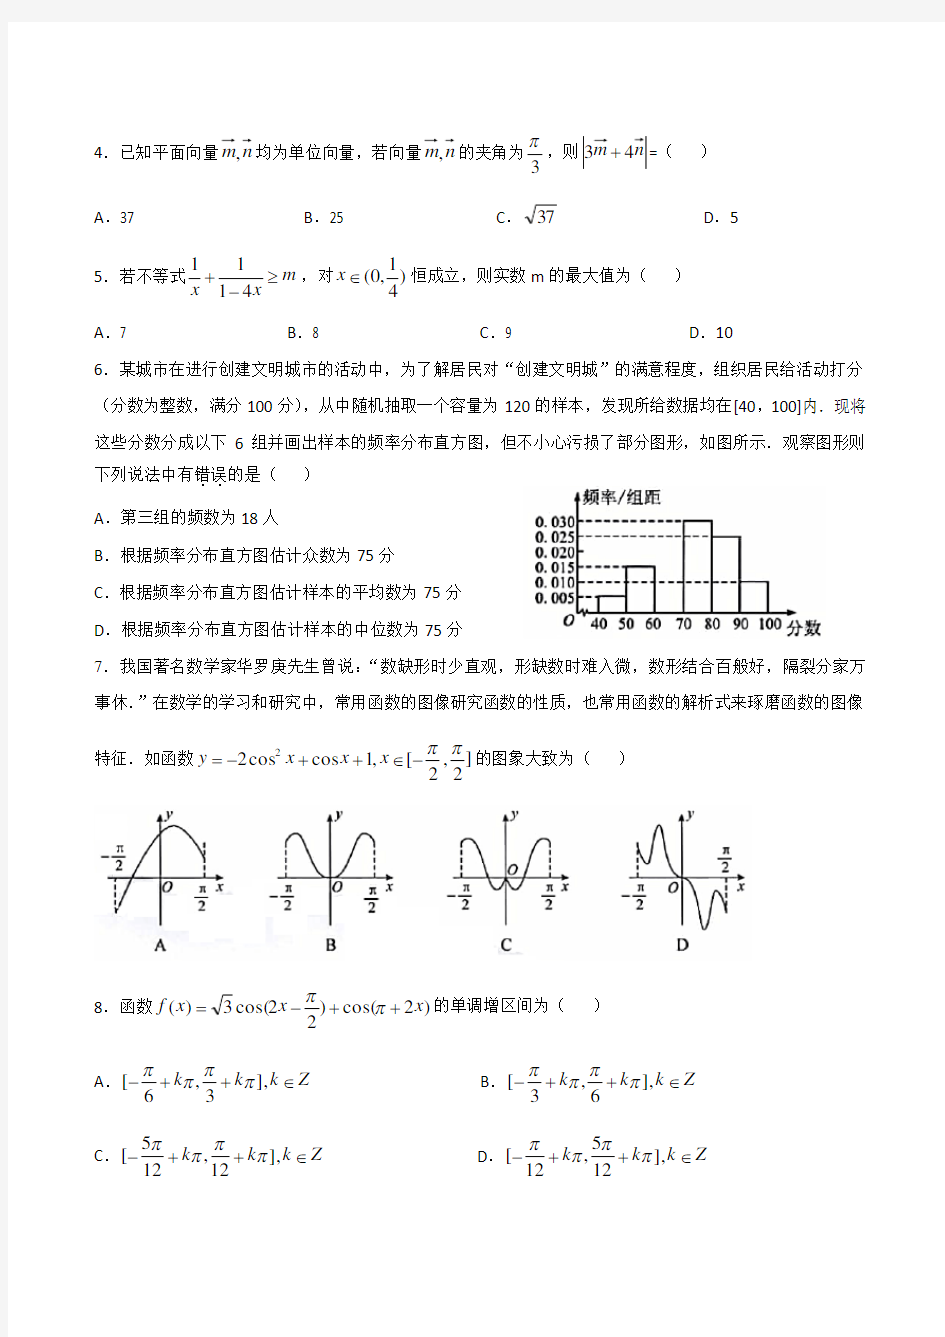 2020年湖北省高三(4月)线上调研考试(文科数学)试卷带答案